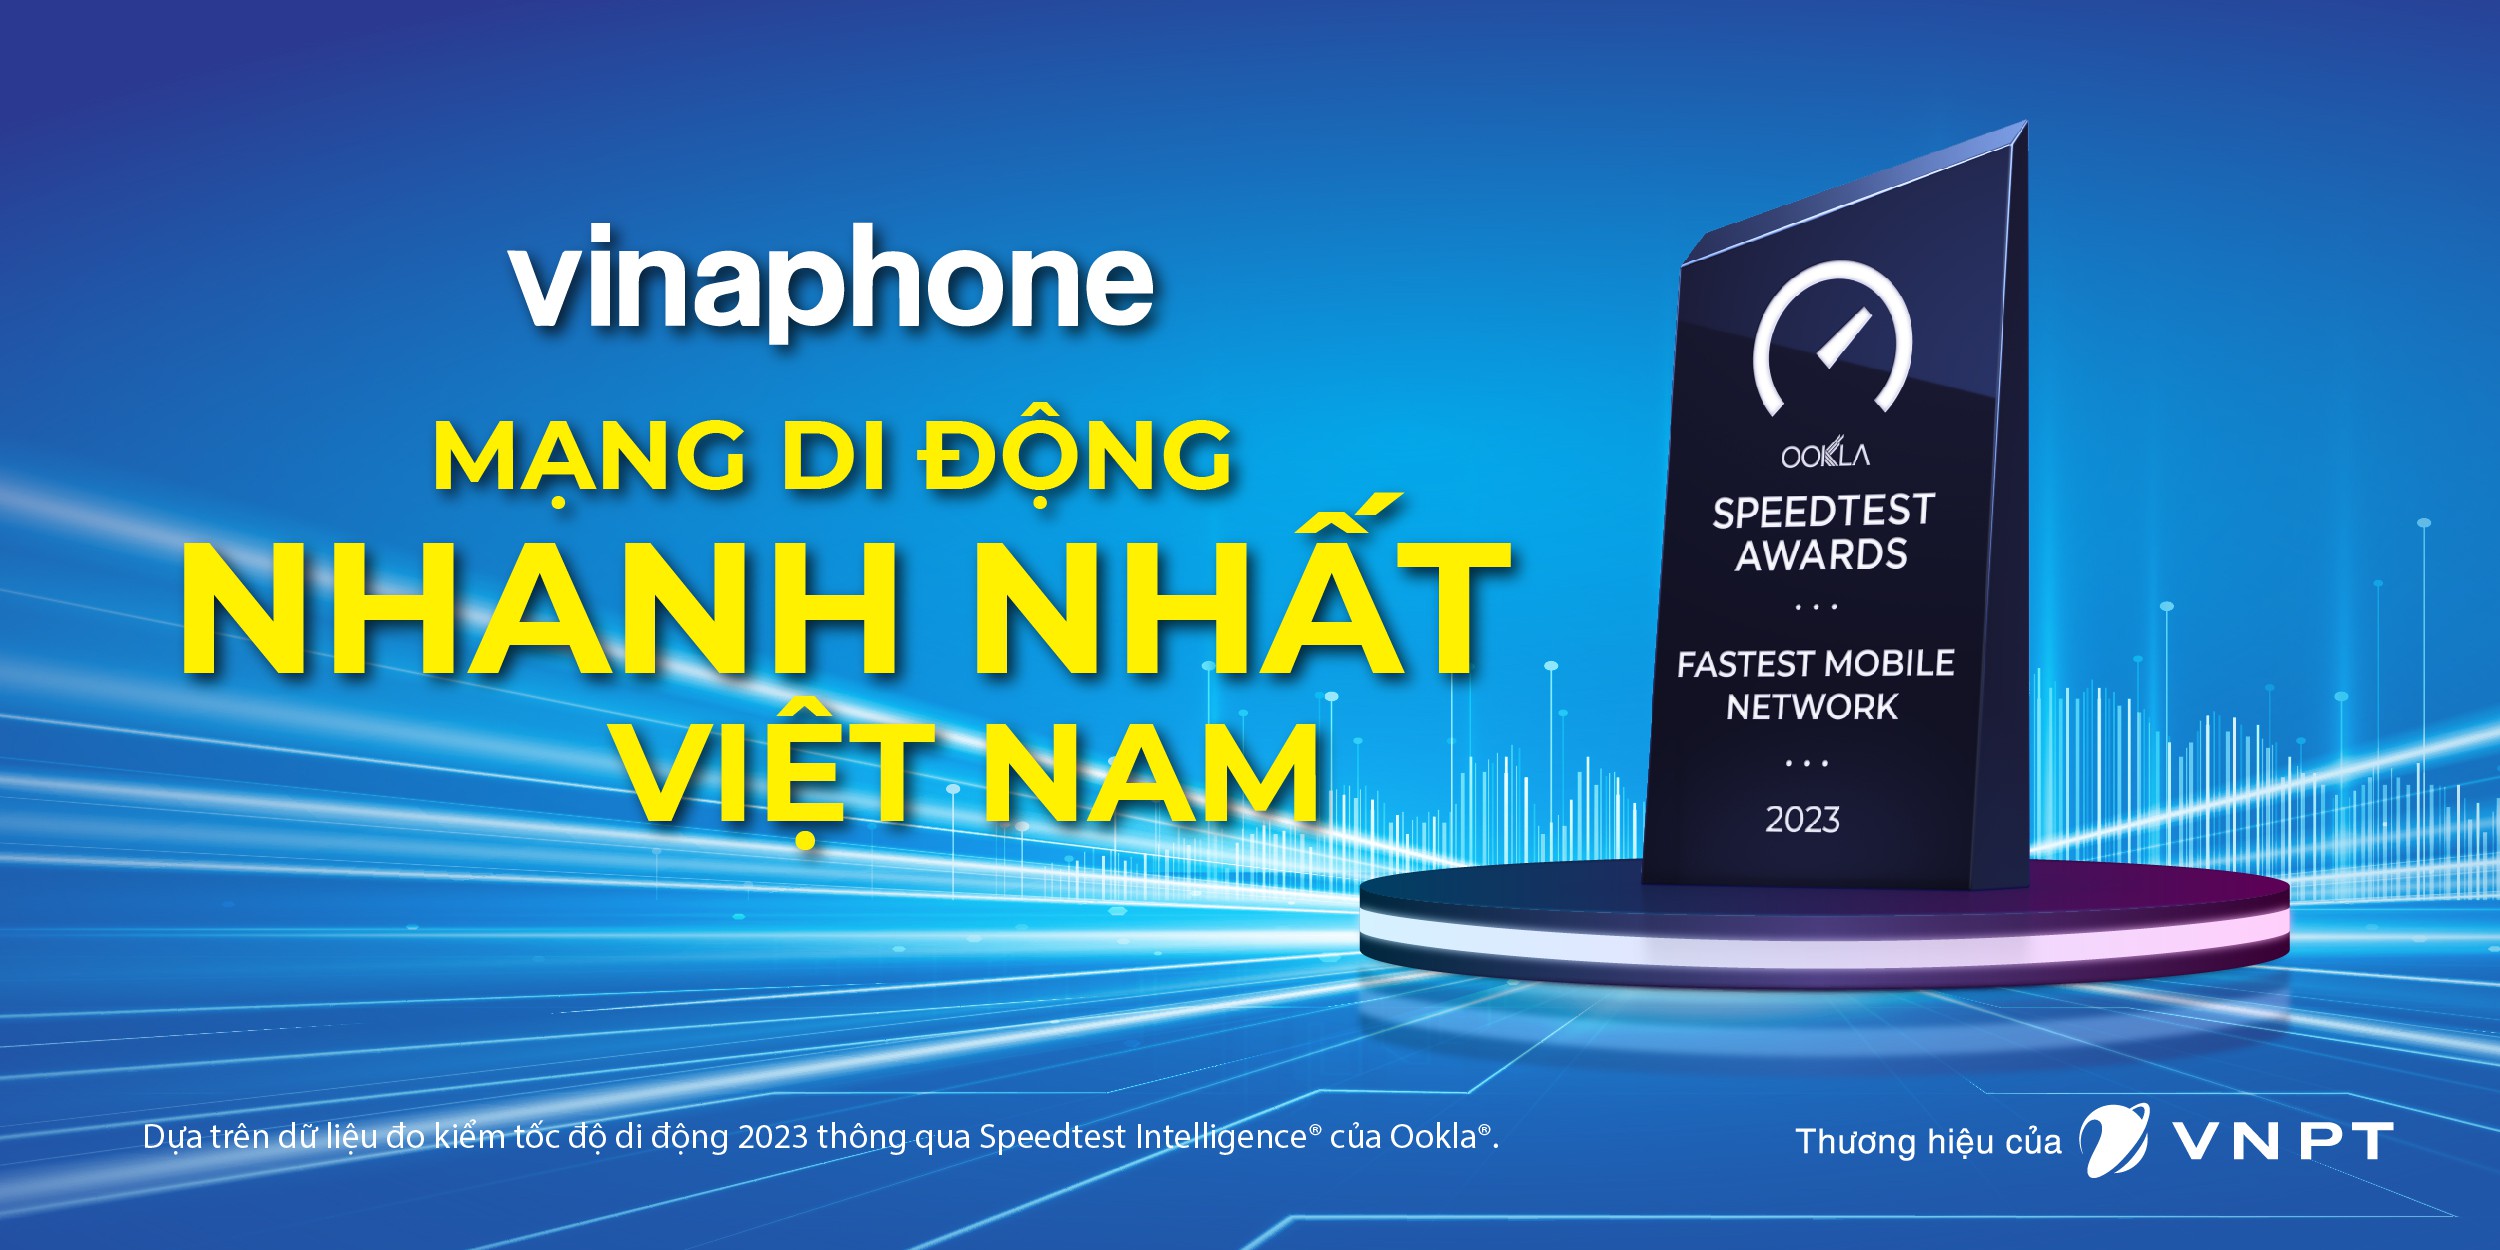 [NTT cho giải đấu] VinaPhone là mạng di động nhanh nhất Việt Nam năm 2023